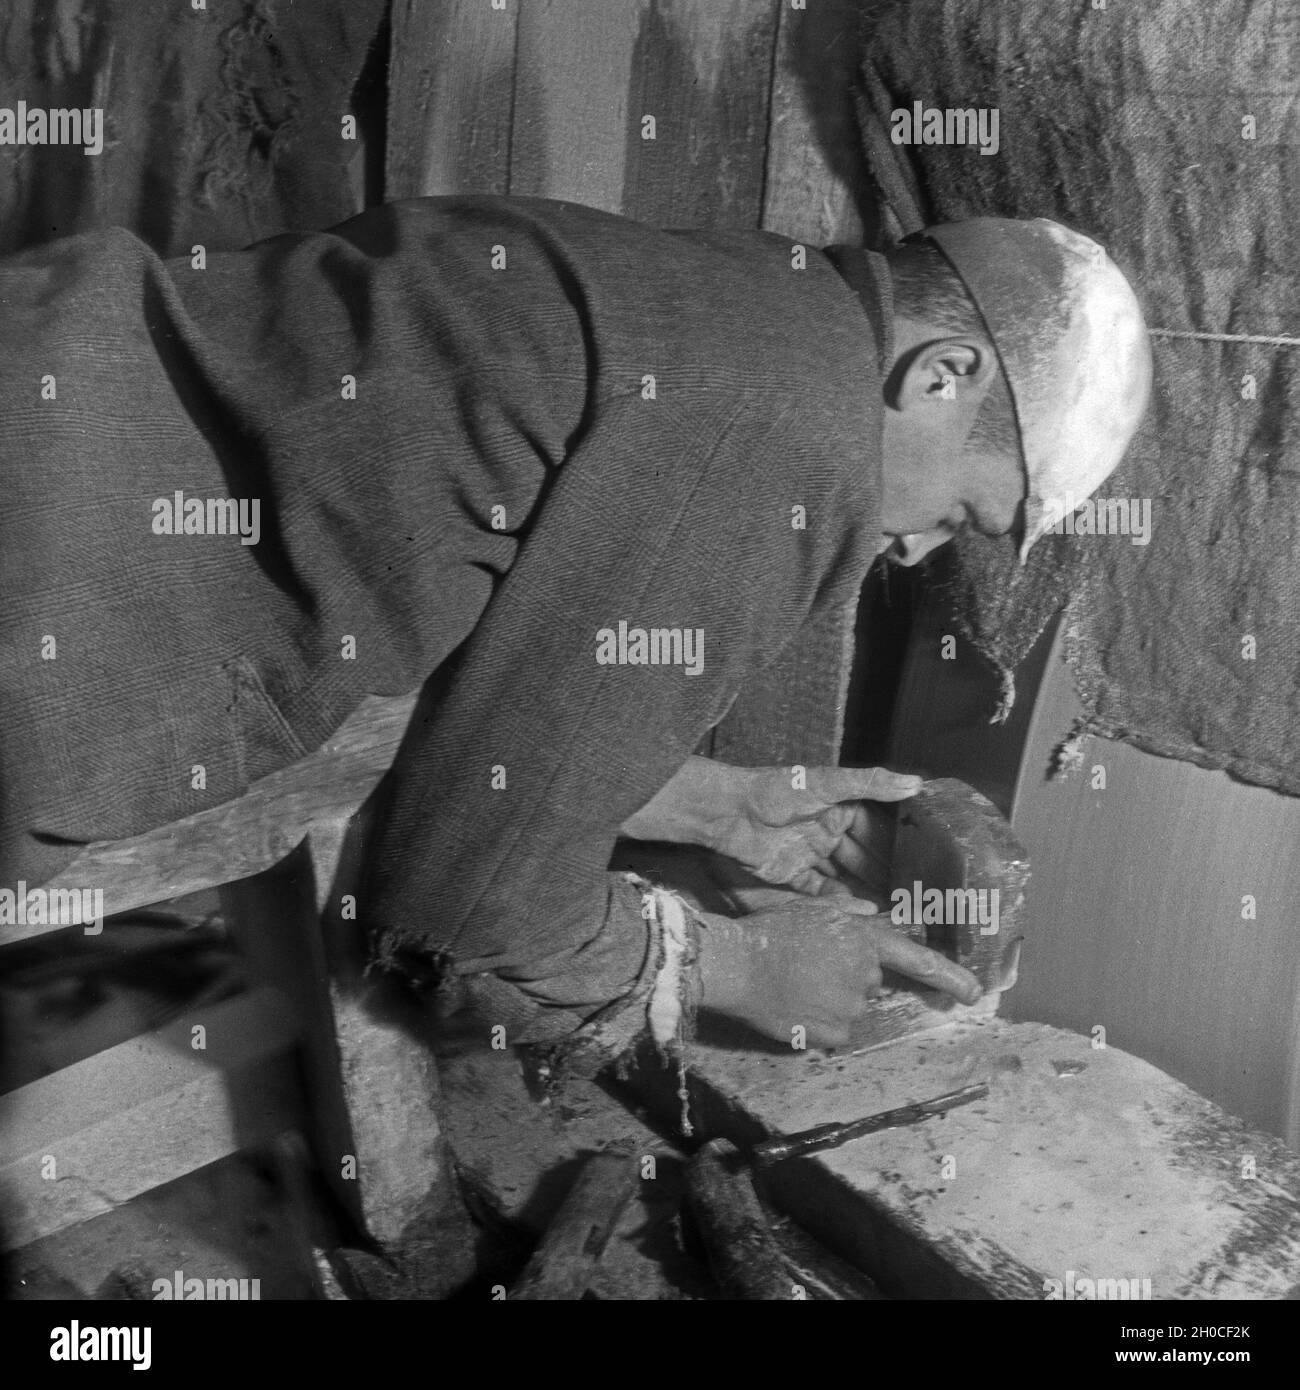 In einer Achatmühle in der Edelsteinstadt Idar Oberstein, Deutschland 1930 Jahre. Presso un mulino di agate nella città di Idar Oberstein, città delle gemme, Germania anni trenta. Foto Stock